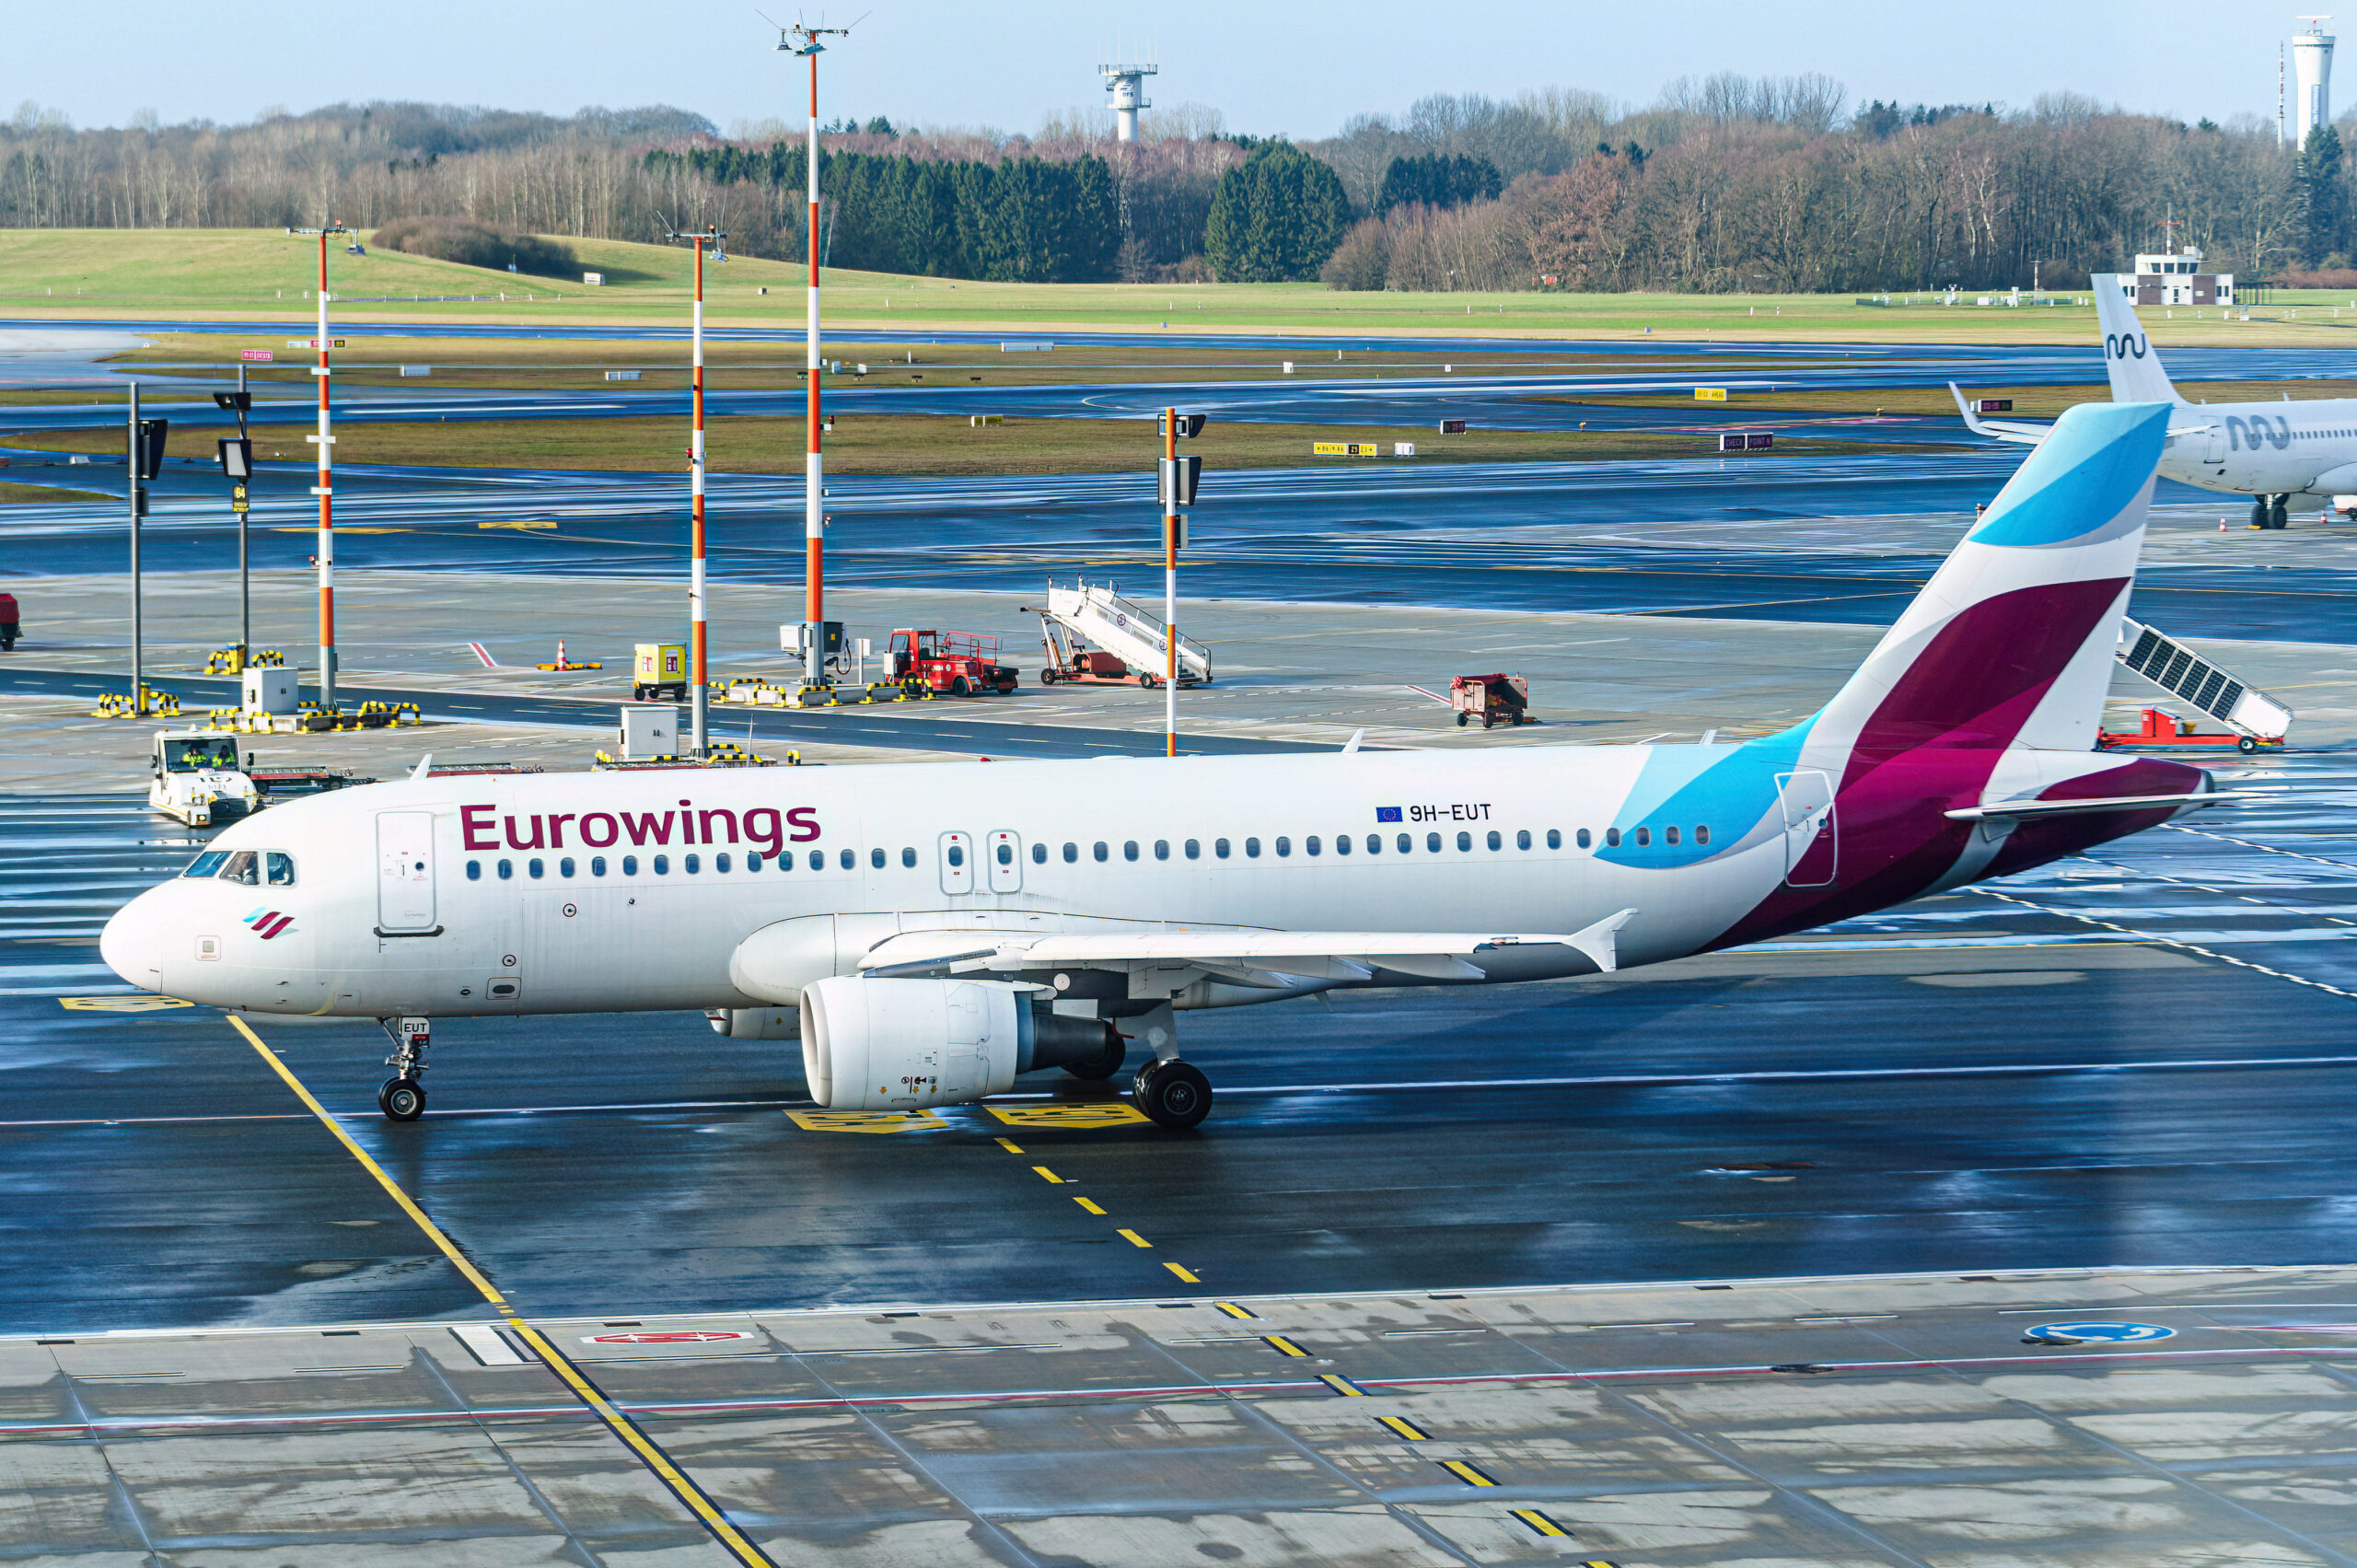 Bei Landung am Hamburger Flughafen: Reifen von Eurowings-Maschie platzt – Großalarm